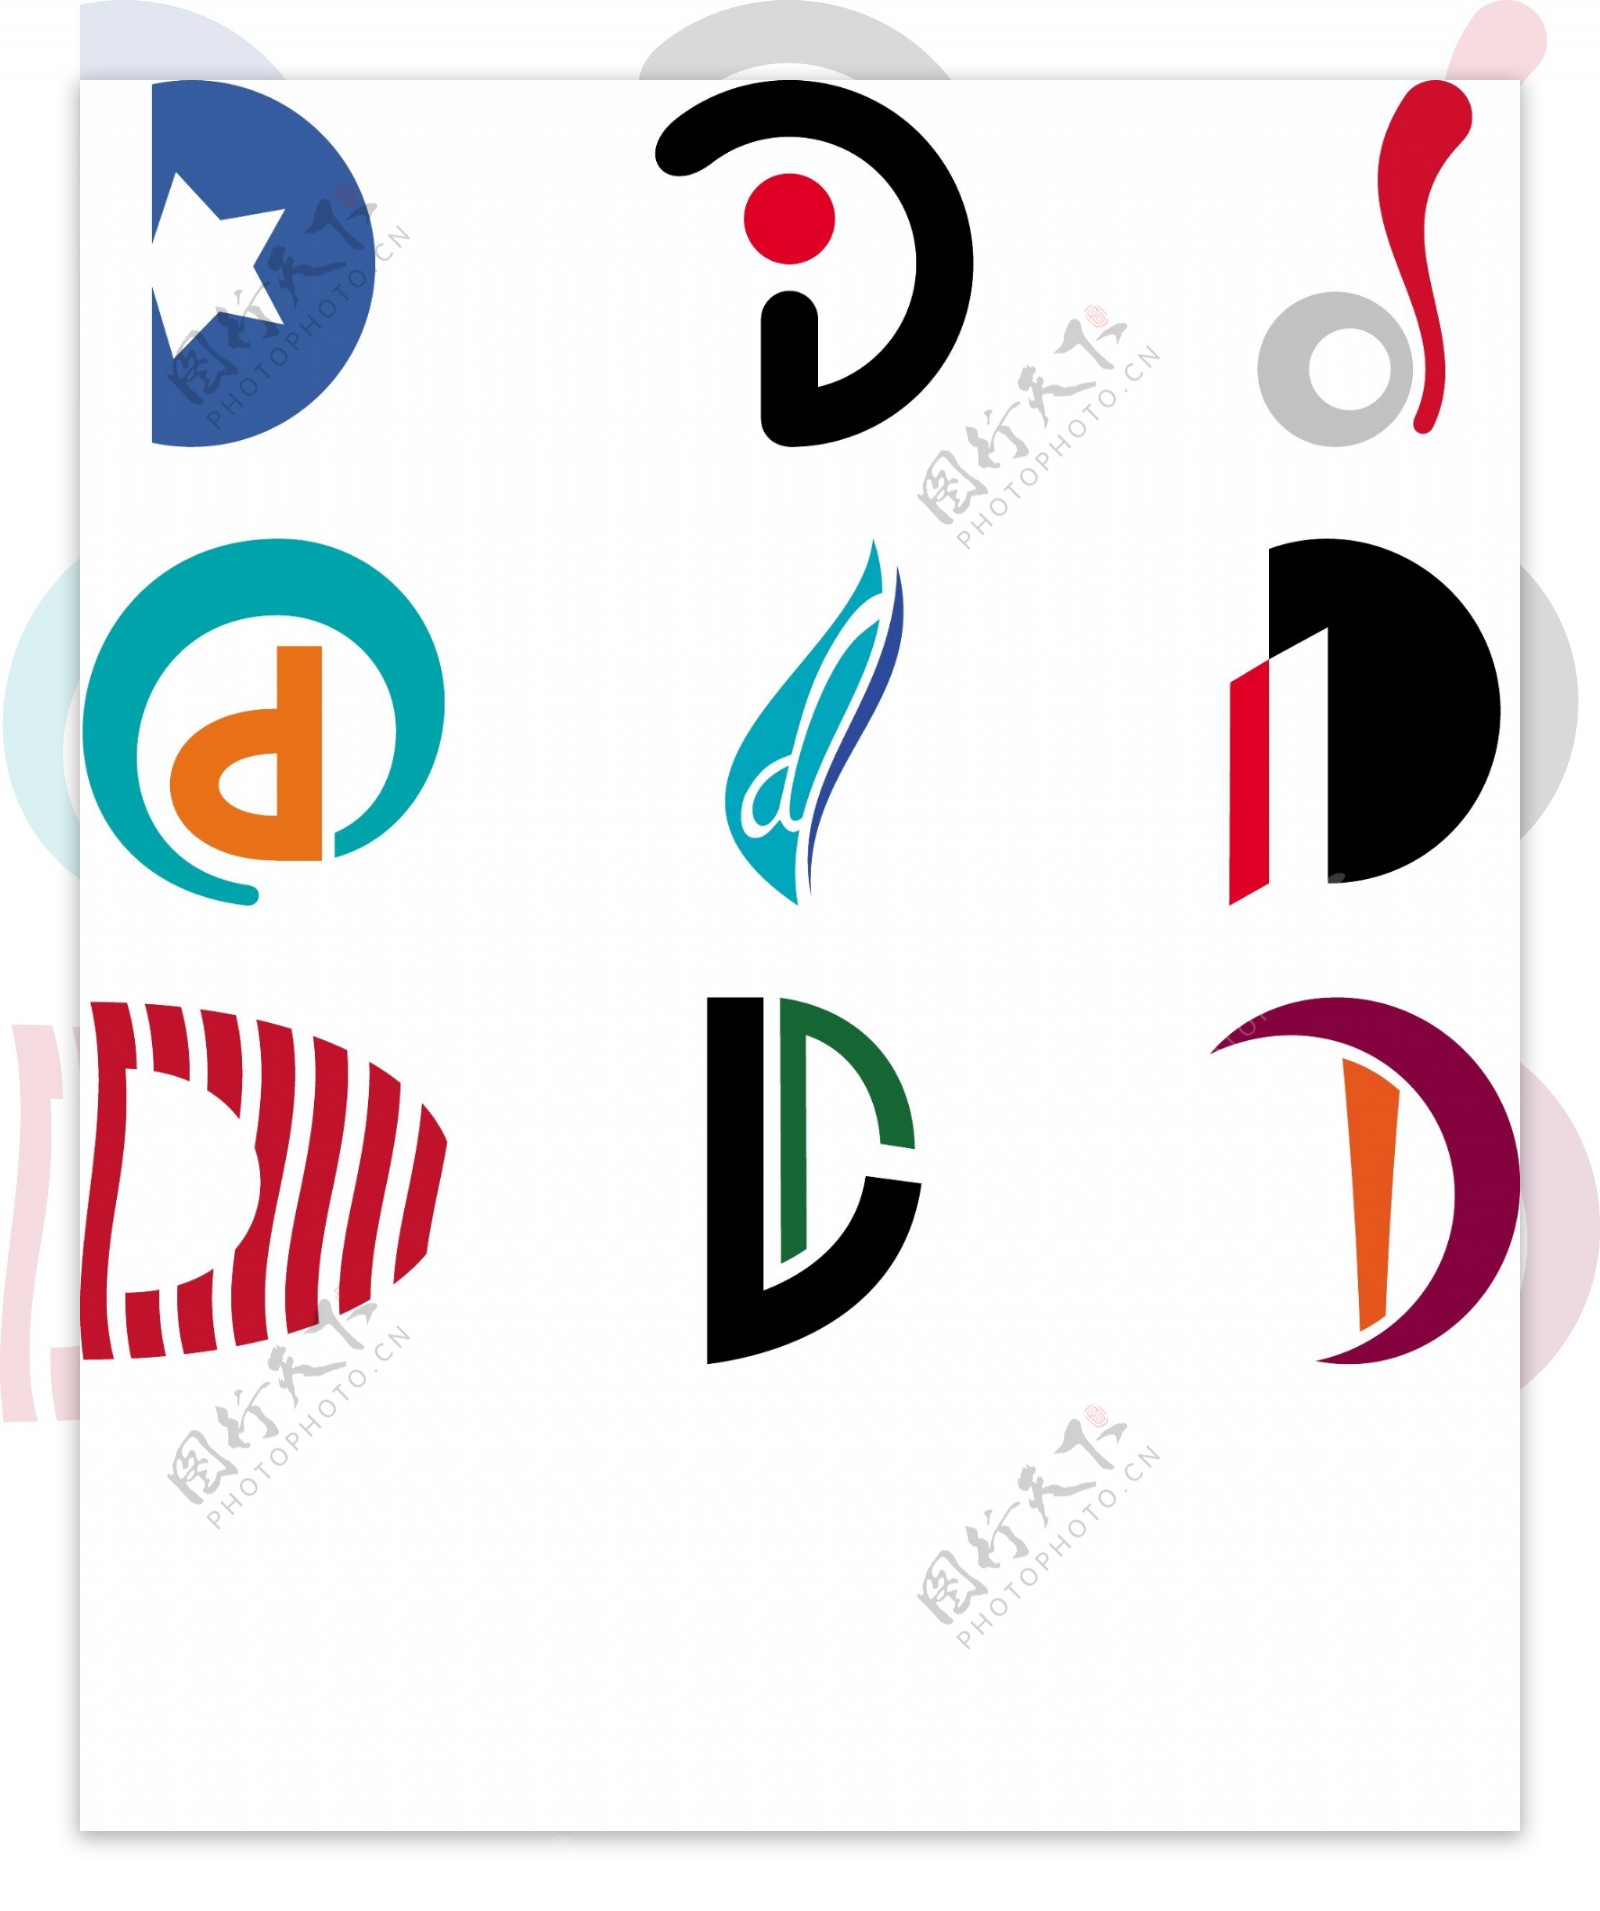 字母D标志的概念